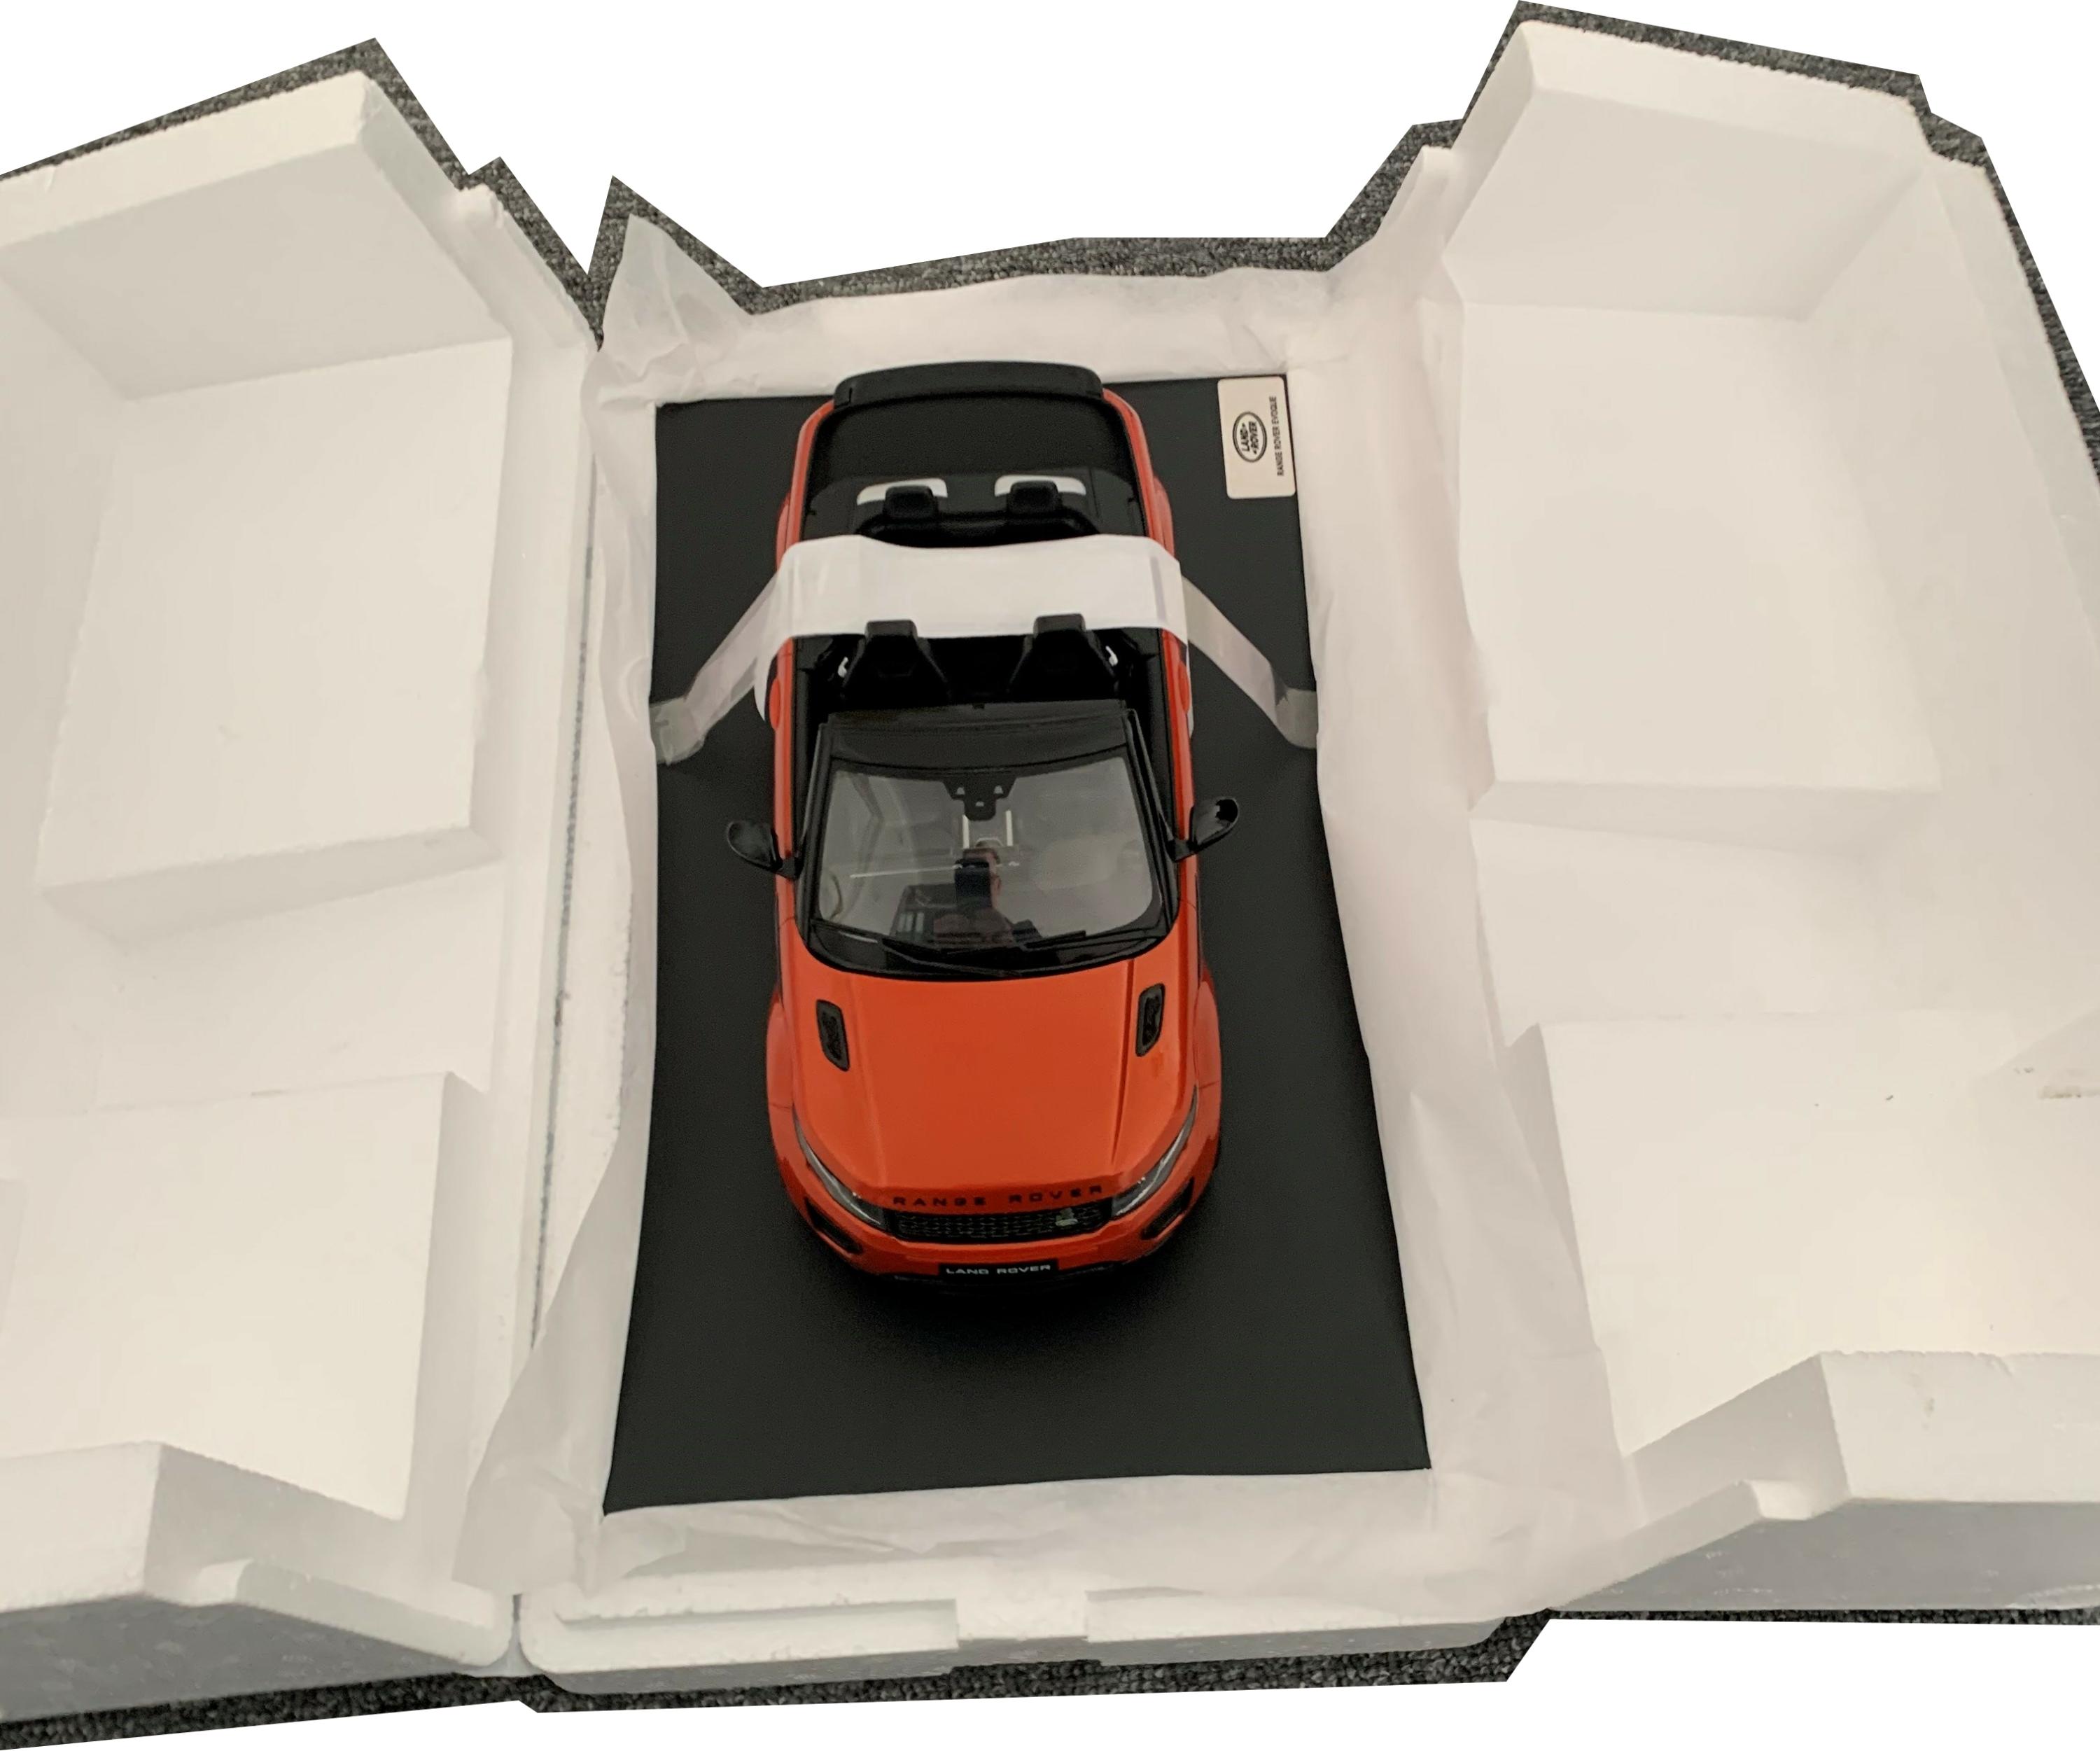 Range Rover Evoque2 dr convertible in orange (truescale) 1:18 scale